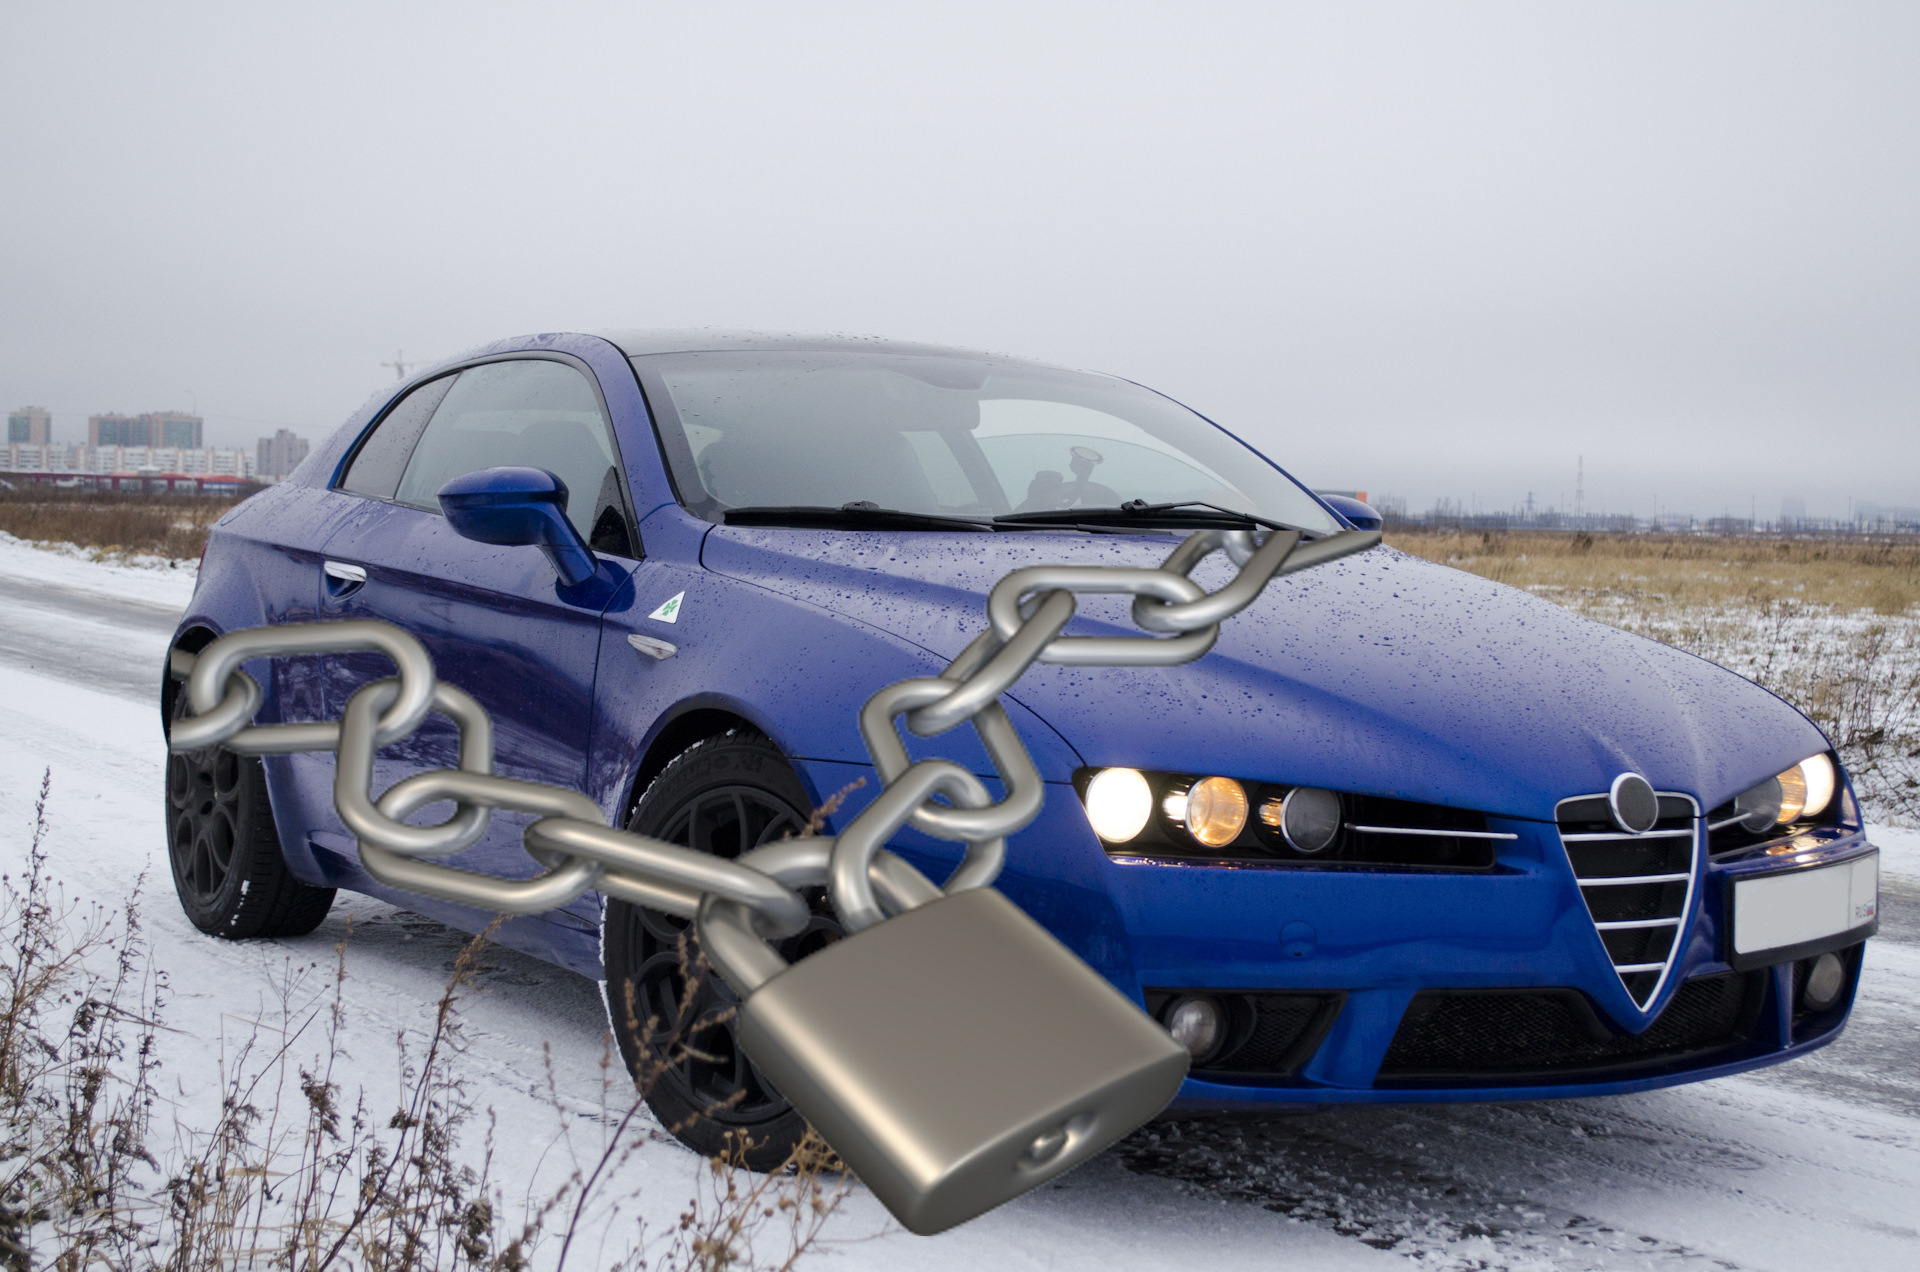 گاڑی کو چوری سے بچانے کے طریقے - گاڑی کو چوری سے بچانے کے سب سے عام اور موثر طریقے